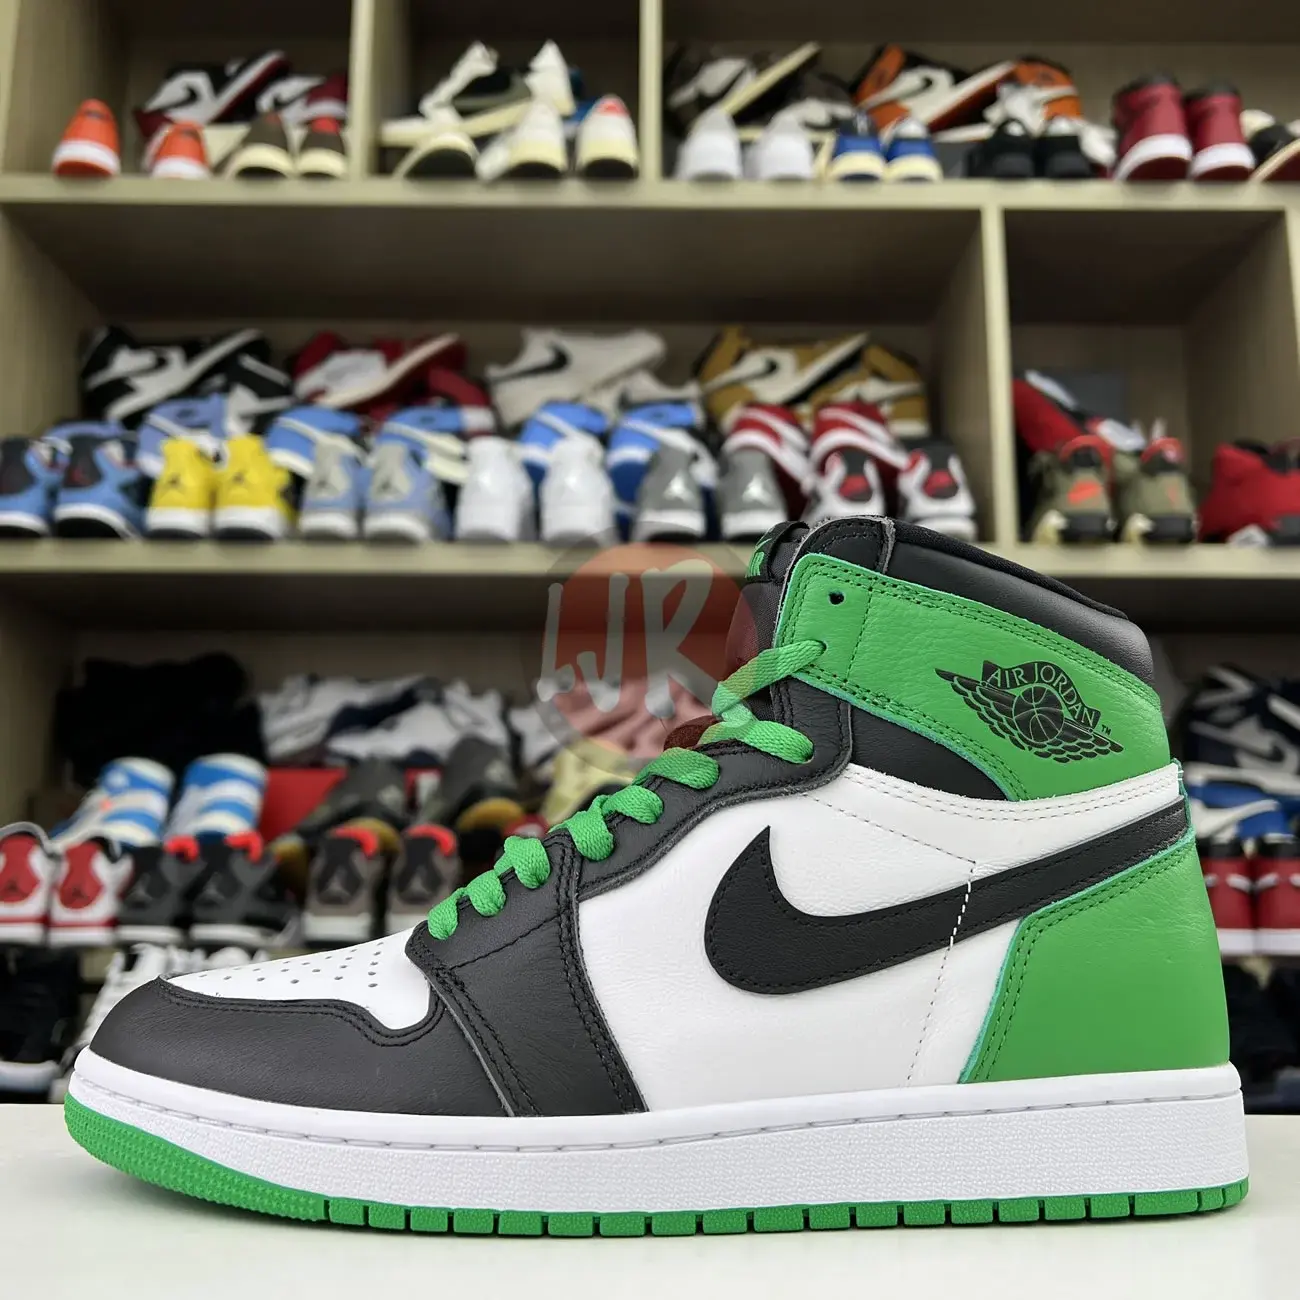 Air Jordan 1 Retro High Og Lucky Green Dz5485 031 Ljr Sneakers (26) - bc-ljr.net